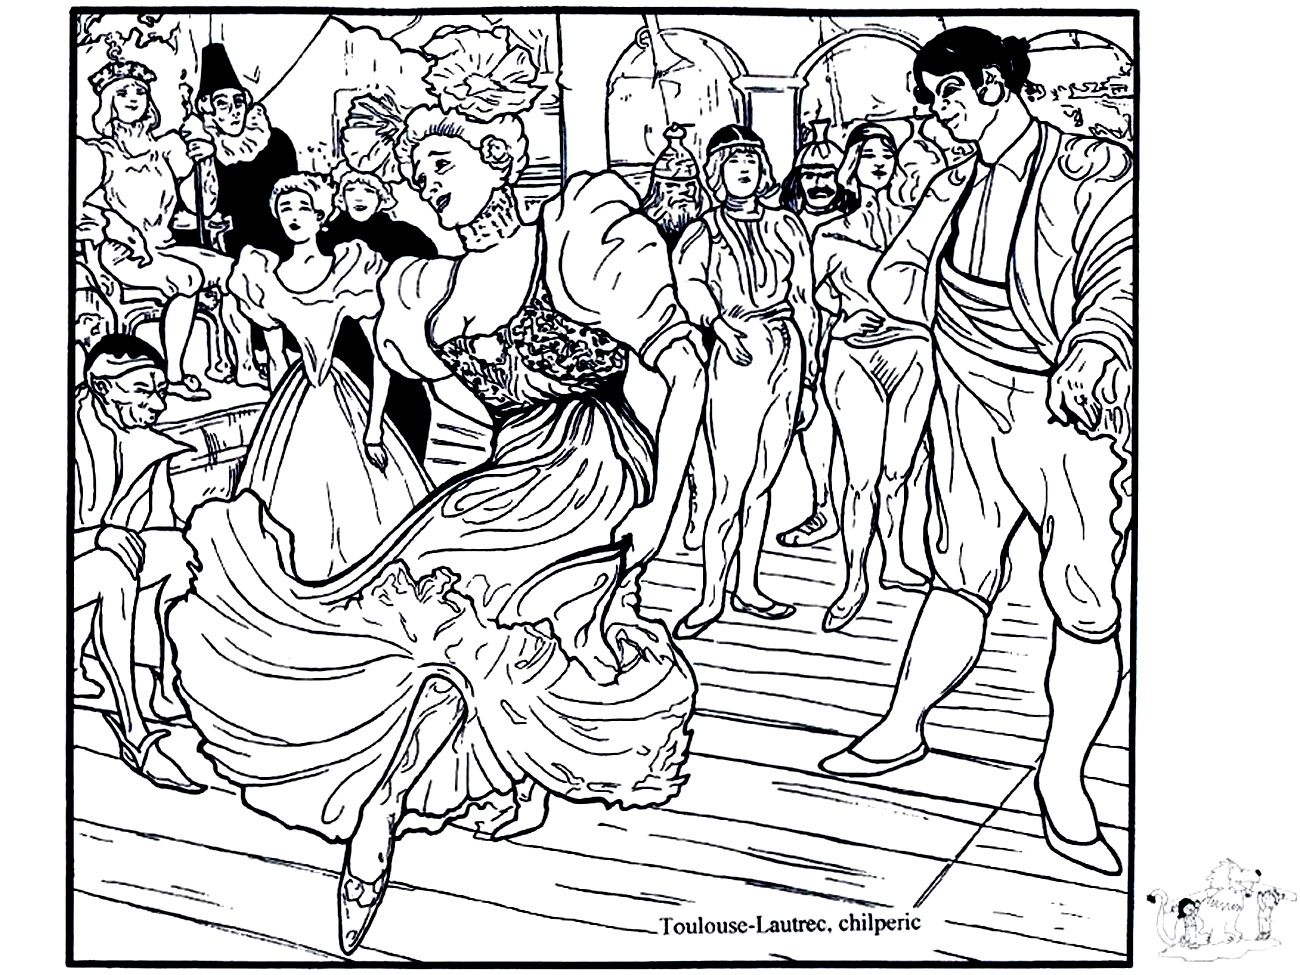 Henri de Toulouse-Lautrec - Marcelle Lender bailando el bolero en 'Chilpéric' (1895-1896). Precioso colorido inspirado en el cuadro de Henri de Toulouse-Lautrec 'Marcelle Lender bailando el bolero en 'Chilpéric'' (1895-1896).
Henri de Toulouse-Lautrec (1864 - 1901) fue un pintor, dibujante, litógrafo, cartelista e ilustrador francés.